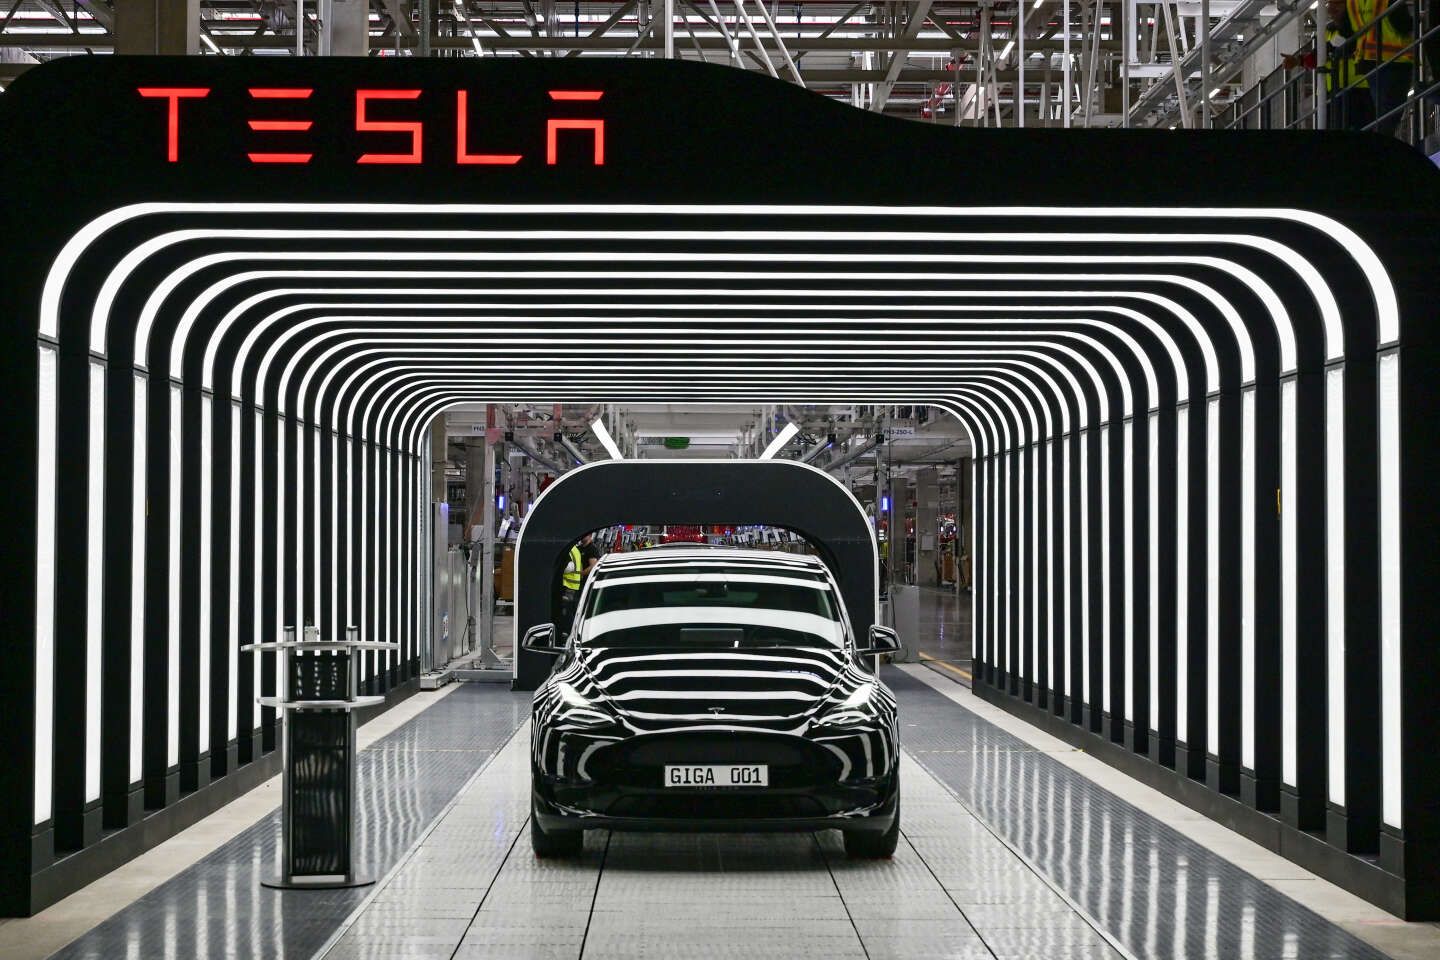 Qui est MG, la marque de voiture électrique qui fait de l'ombre à Tesla ?